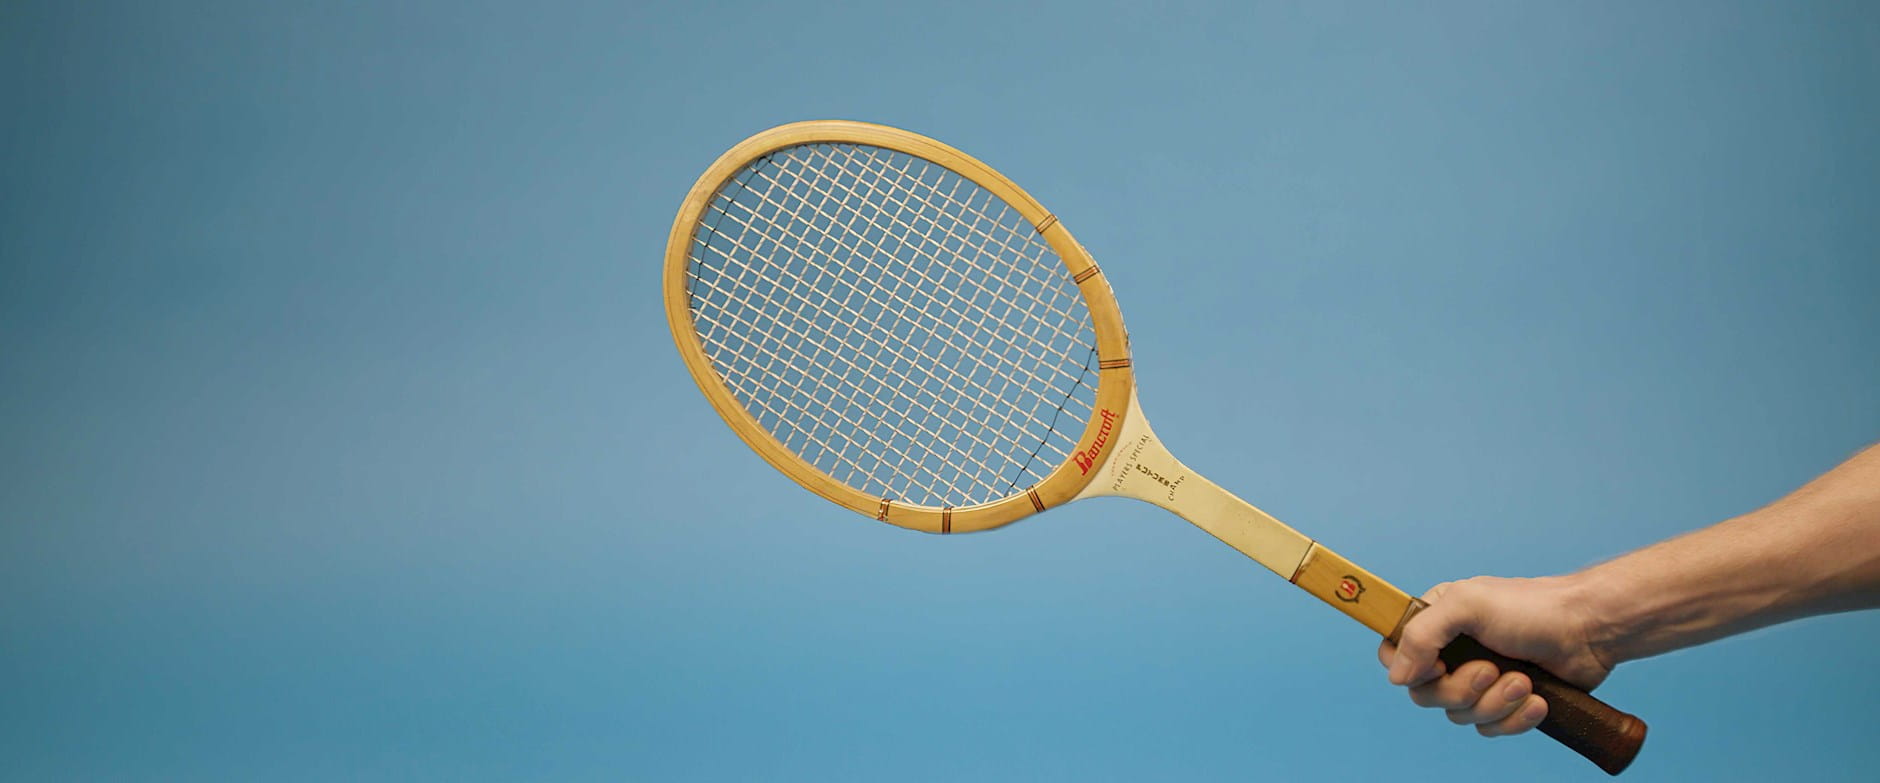 Tennis racket in hand